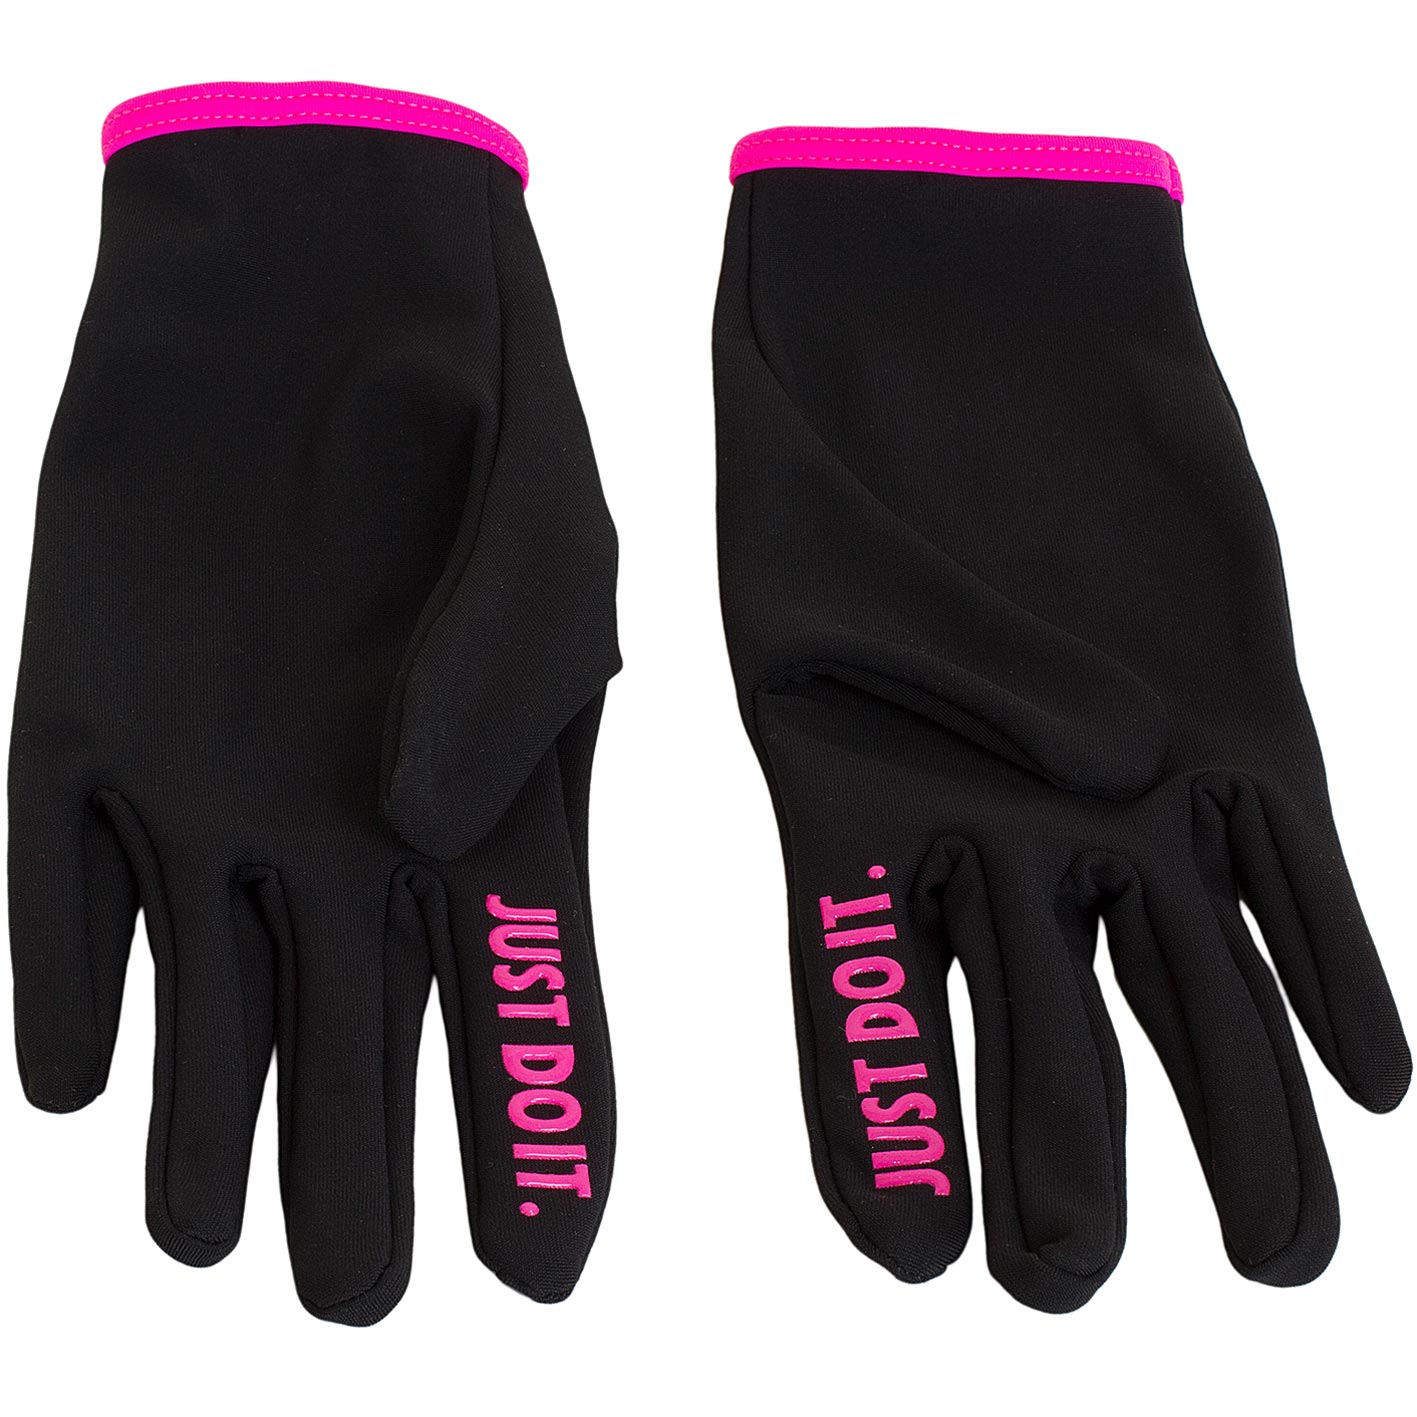 ☆ Nike Damen Handschuhe Lightweight Rival schwarz/pink - hier bestellen!